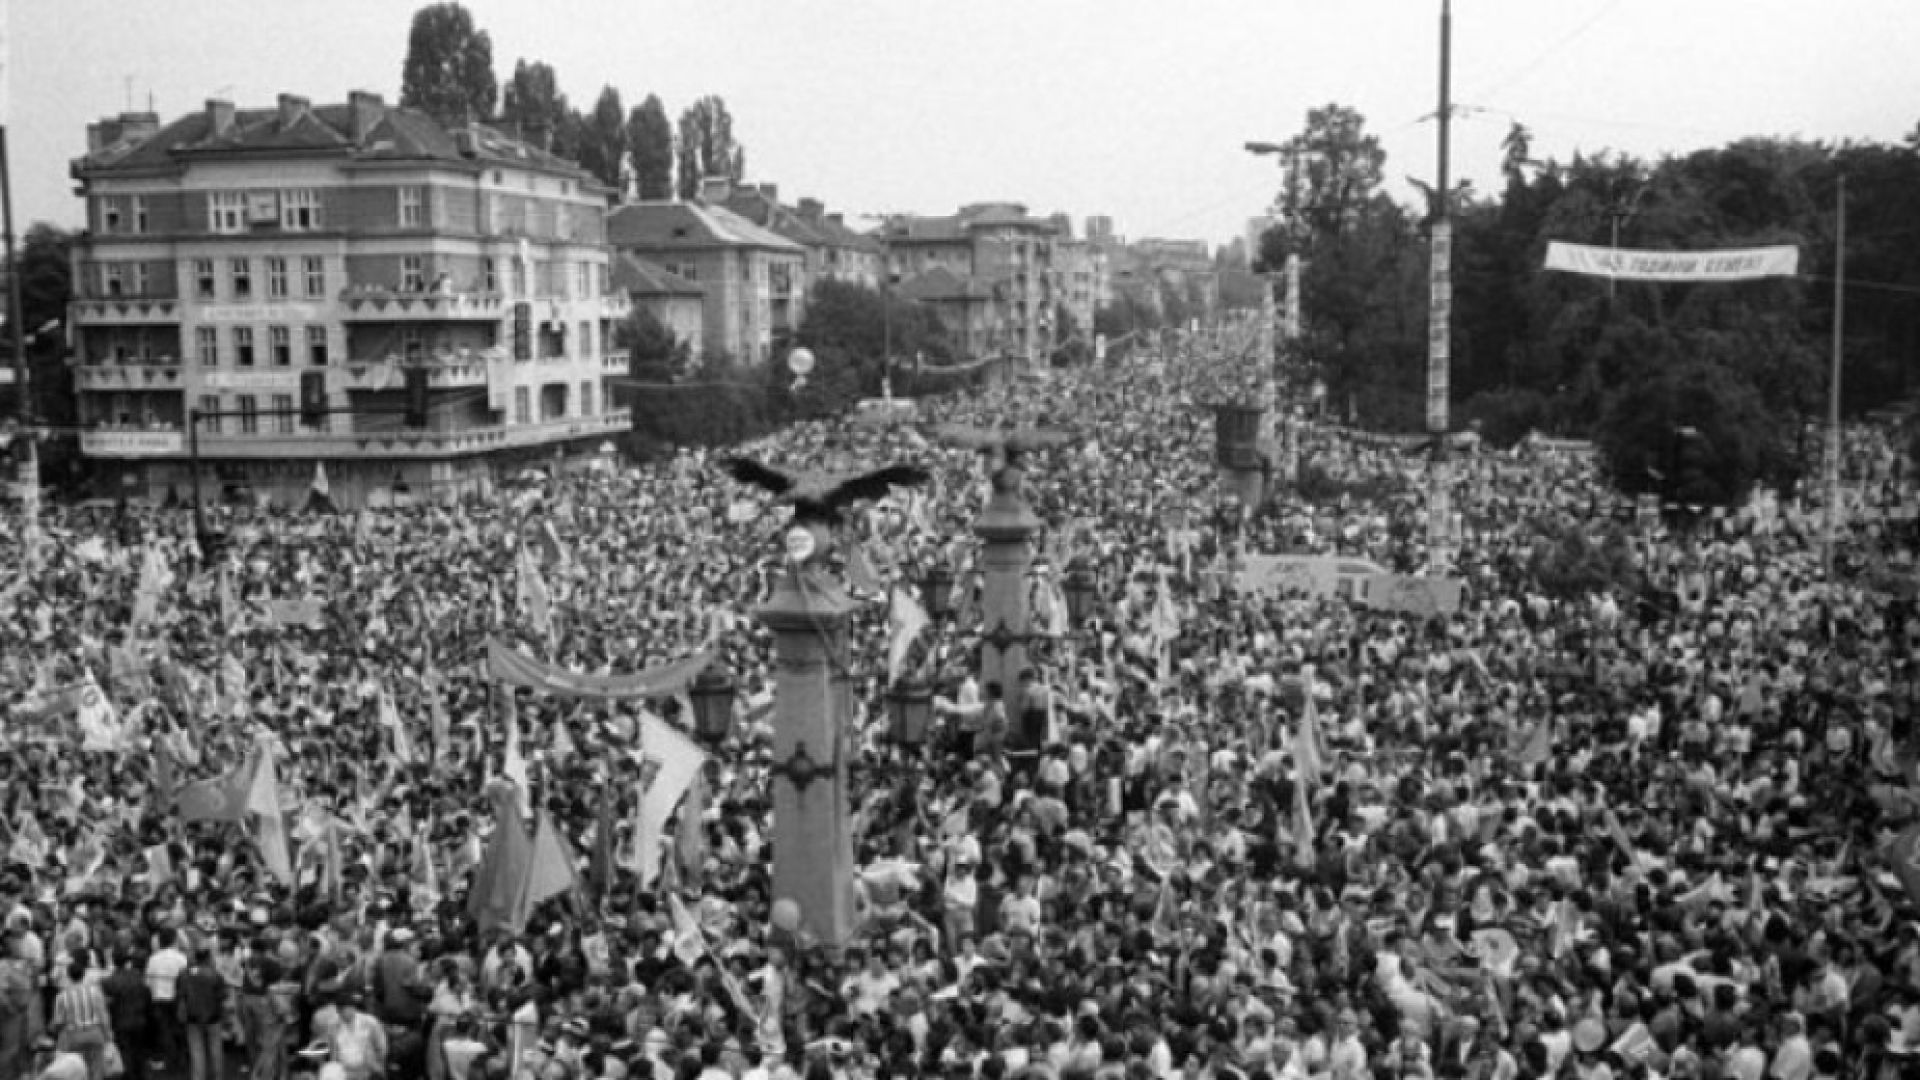 Днес се навършват 30 години от най големия митинг в България